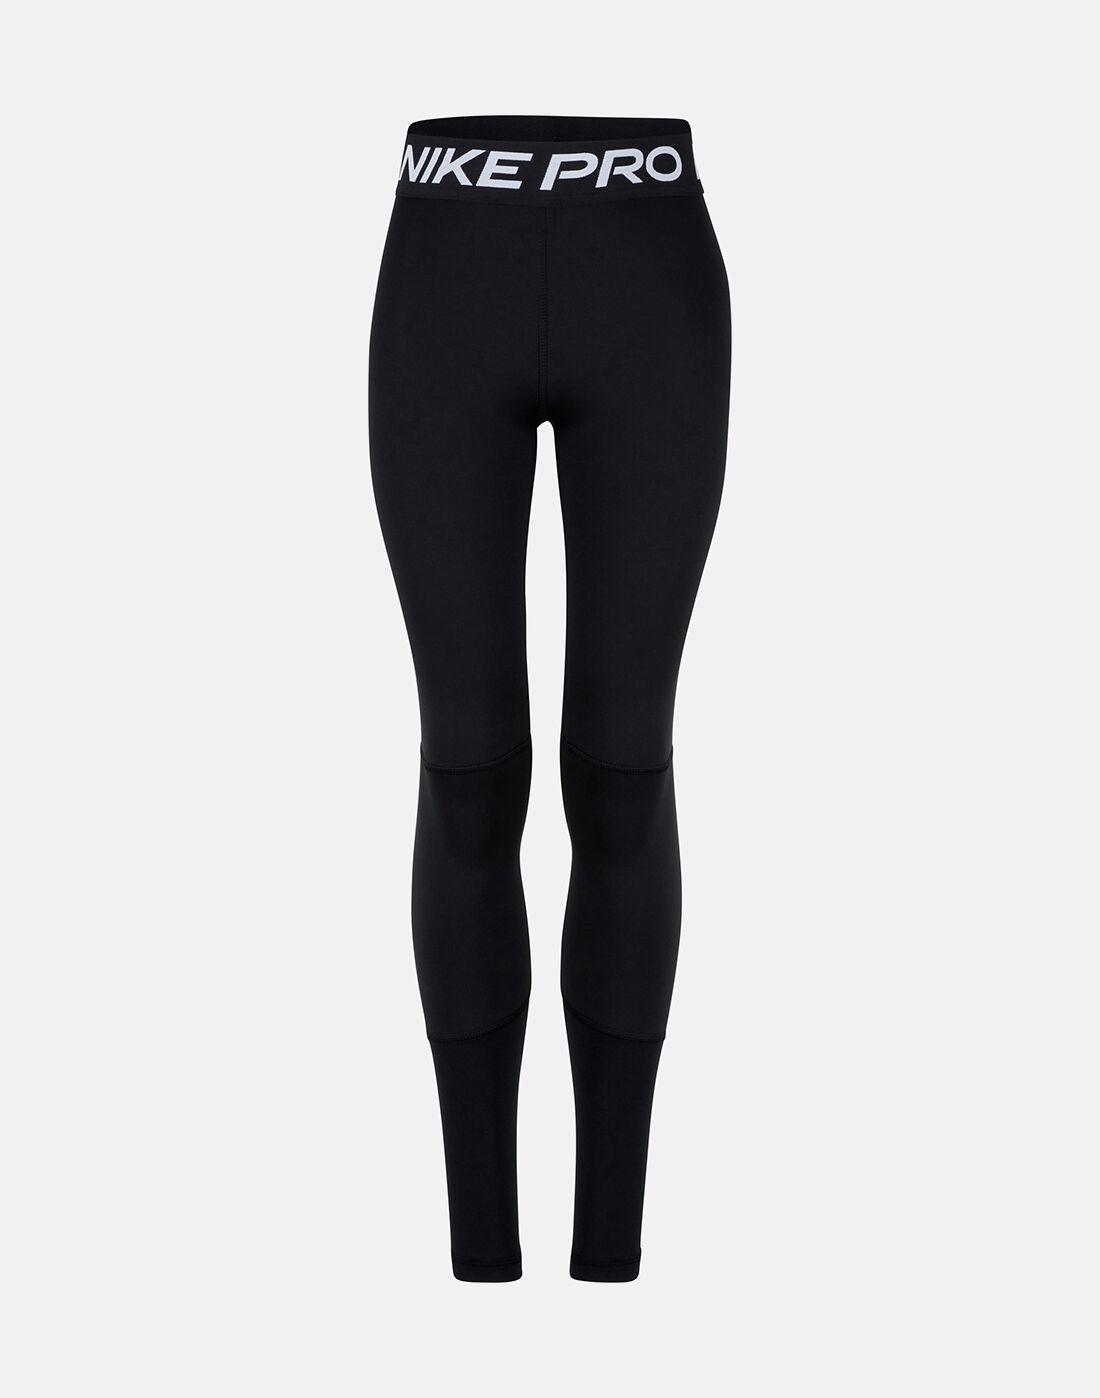 Nike Older Girls Pro Leggings - Black 